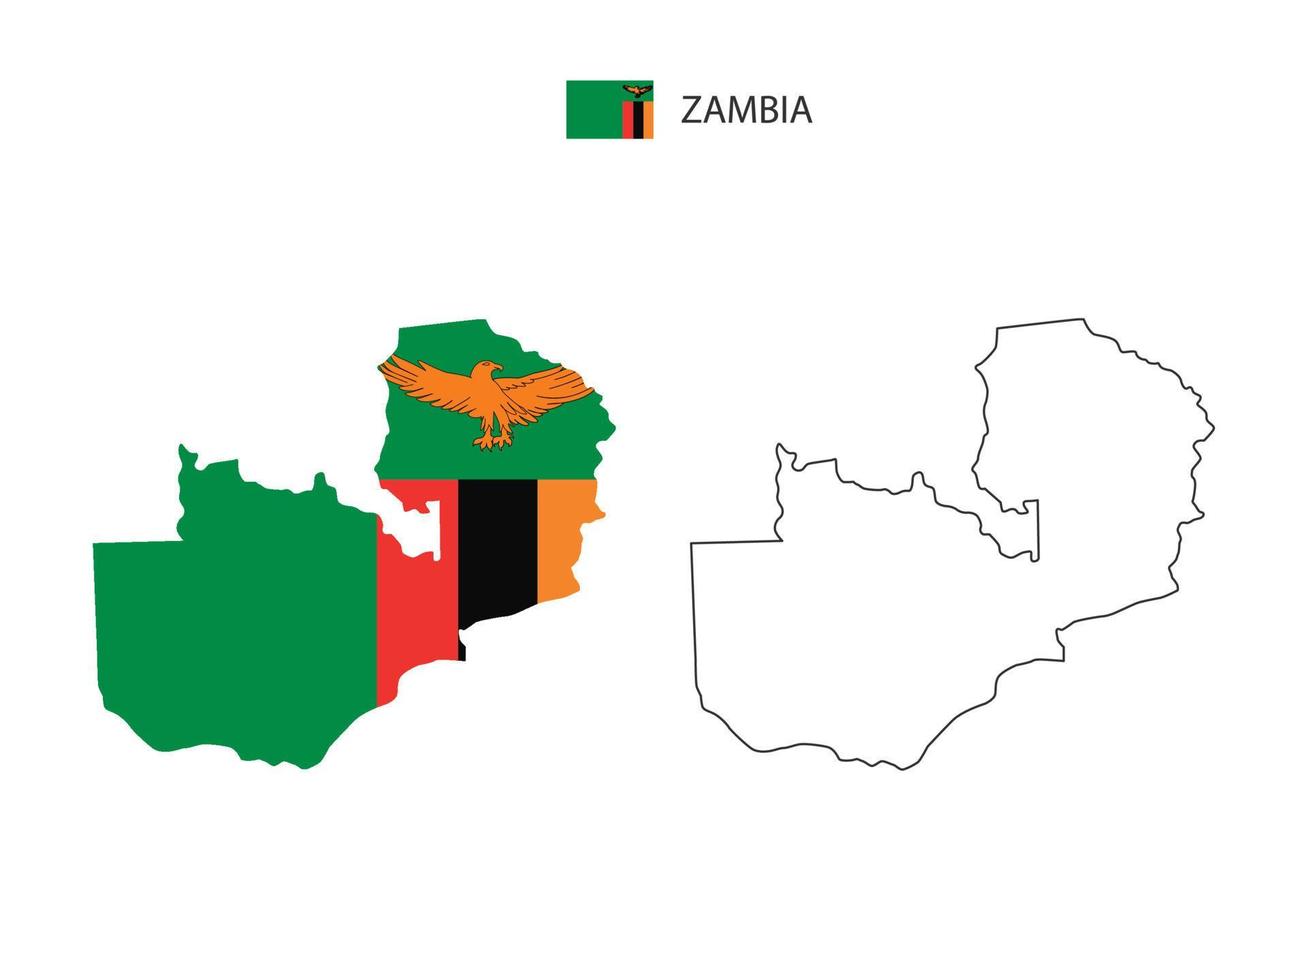 vetor da cidade do mapa da zâmbia dividido pelo estilo de simplicidade do esboço. tem 2 versões, versão de linha fina preta e cor da versão da bandeira do país. ambos os mapas estavam no fundo branco.